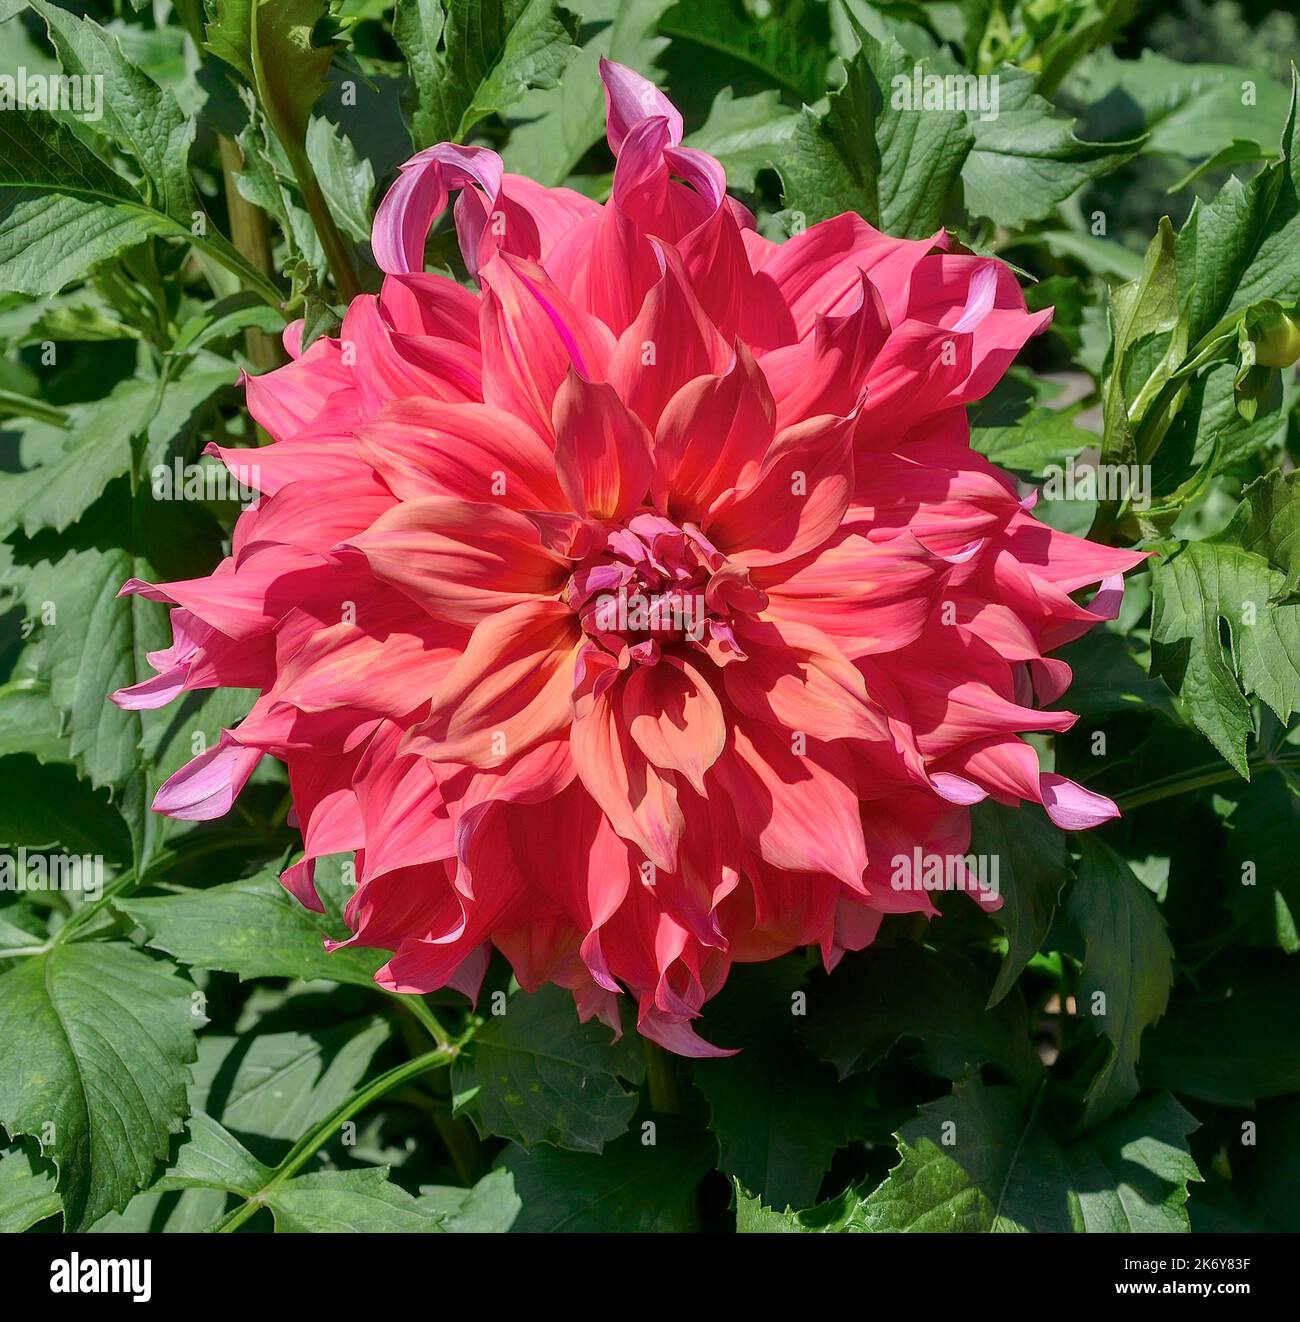 Altamente ornamental Delimitly delicada flor de dahlia rosa-púrpura, variedad Islander. Preciosa cabeza de flor otoñal doble de dahlia de flores grandes Foto de stock